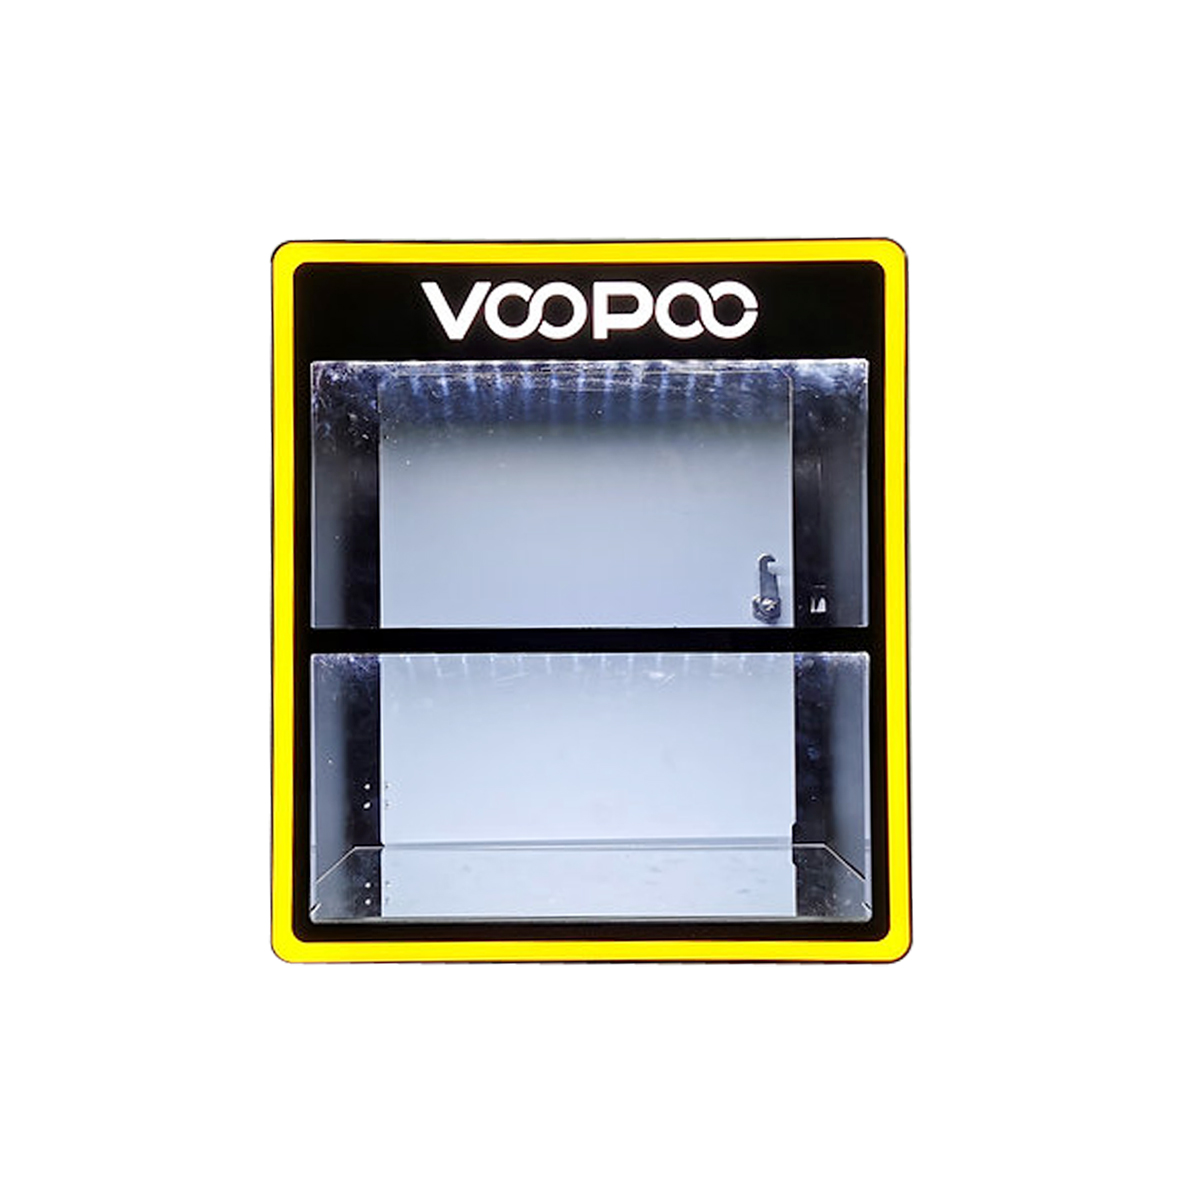 Acrylic Counter Top Vape Display, Acrylic Vaporizer Display Stand